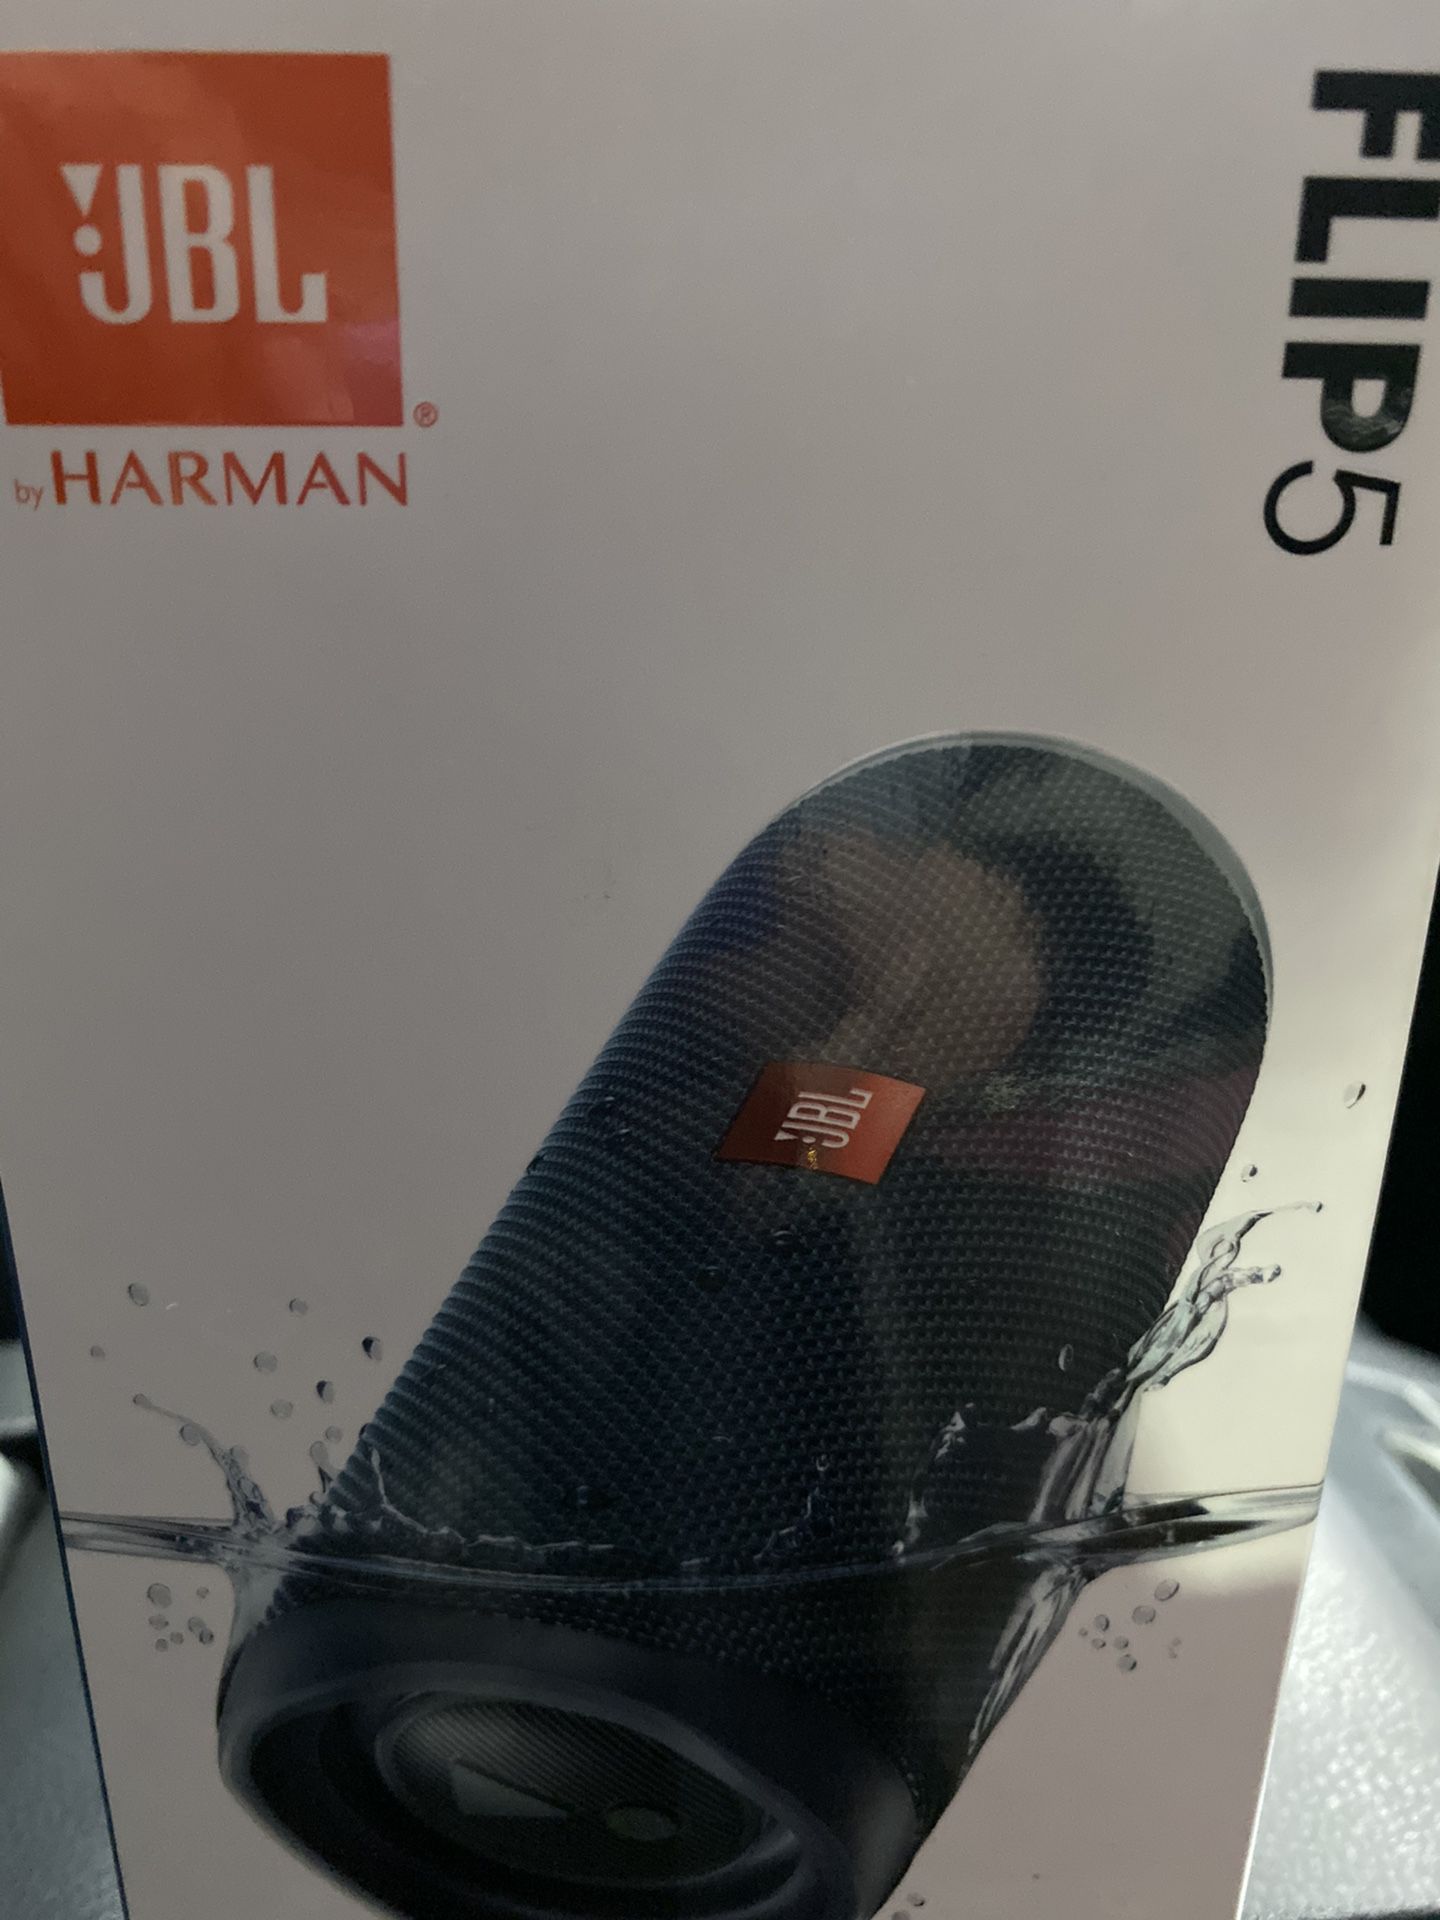 Brand New - never used JBL Flip 5 Bluetooth waterproof speakers